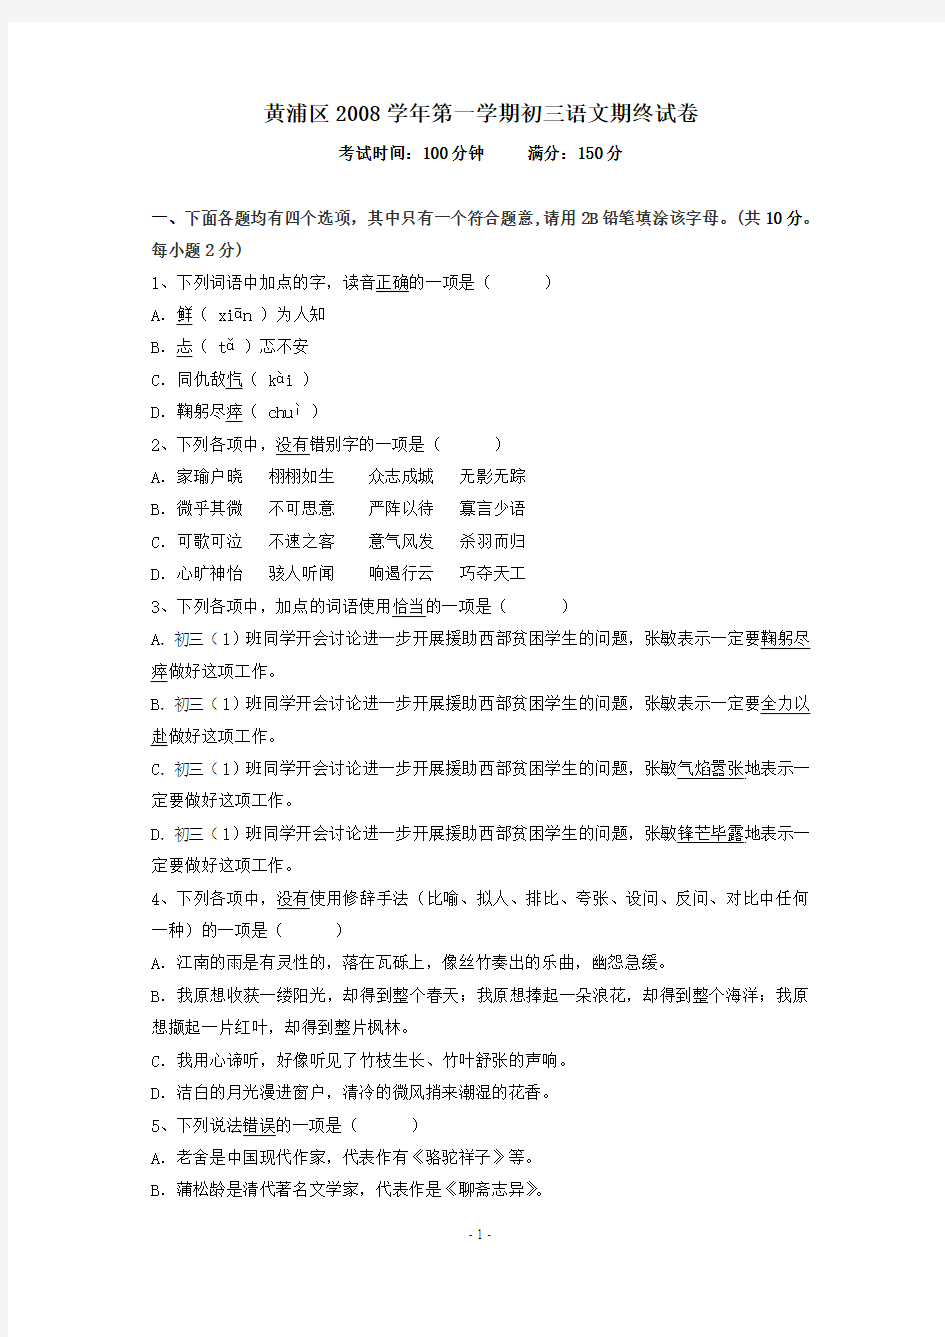 上海市黄浦区2008年第一学期初三年级语文期末考试试卷